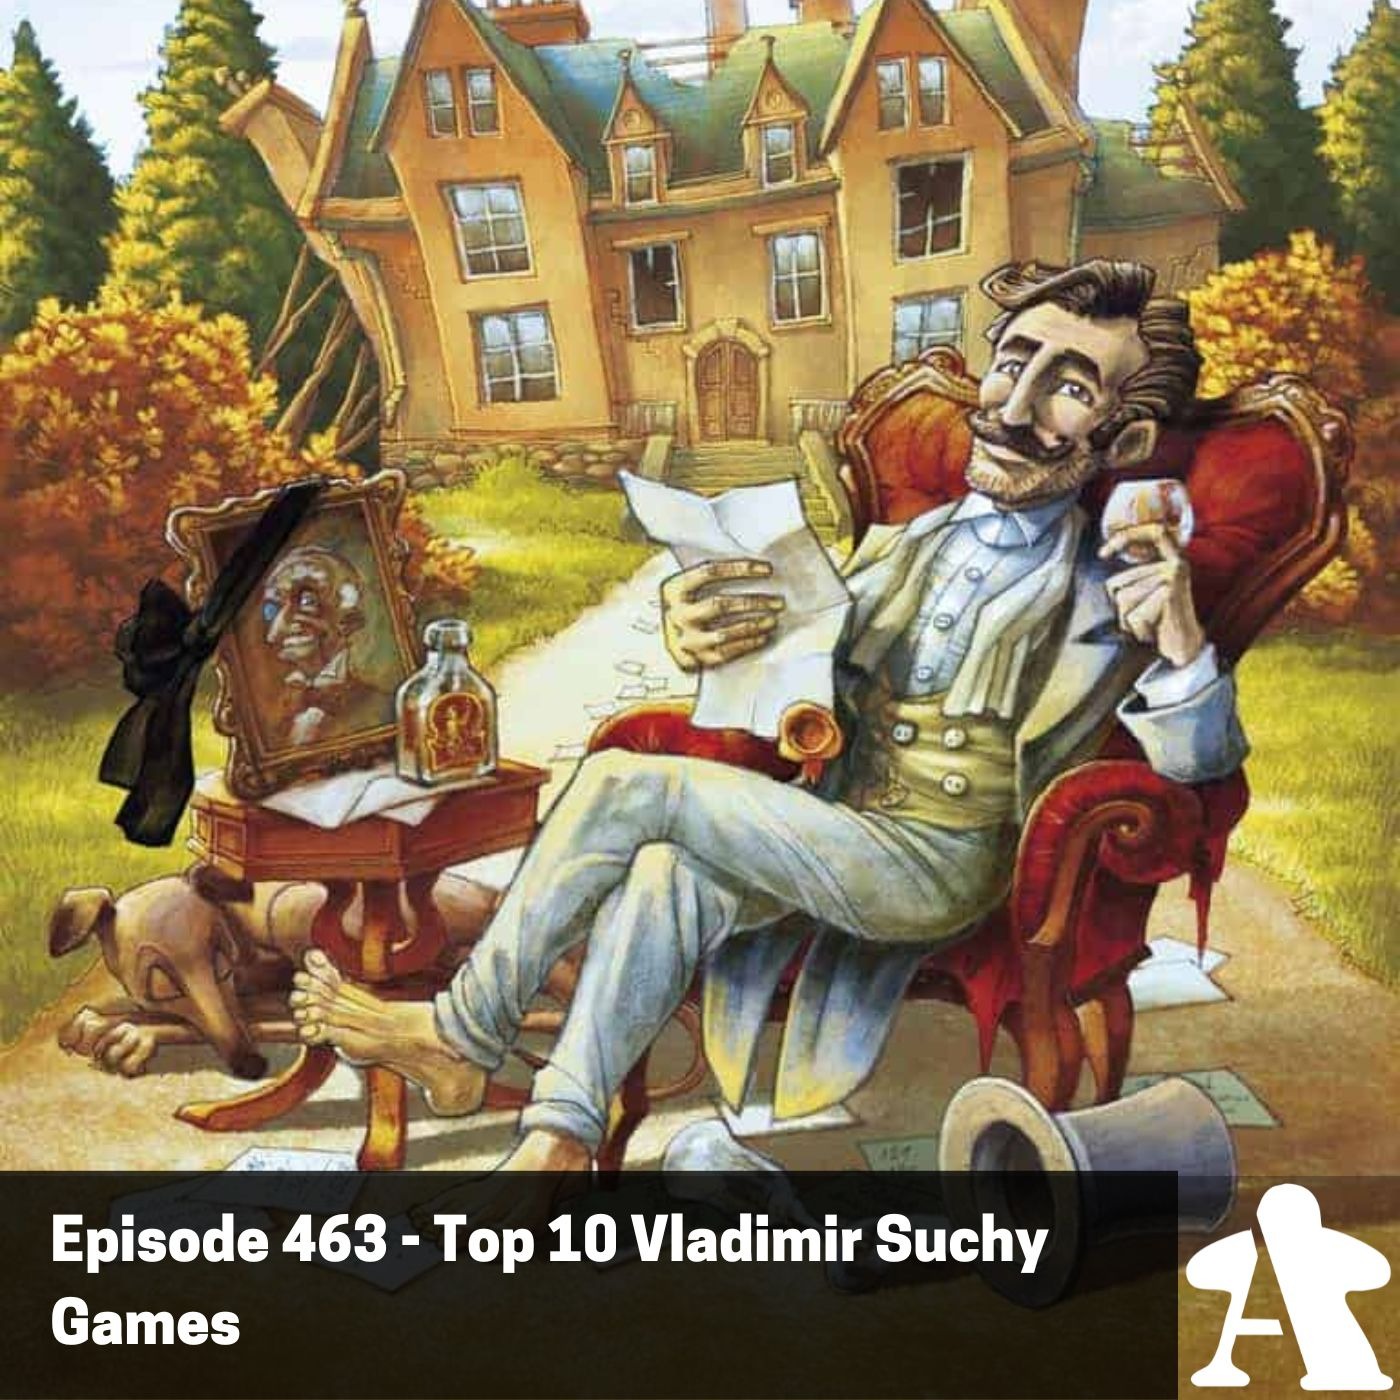 Episode 463 - Top 10 Vladimir Suchy Games